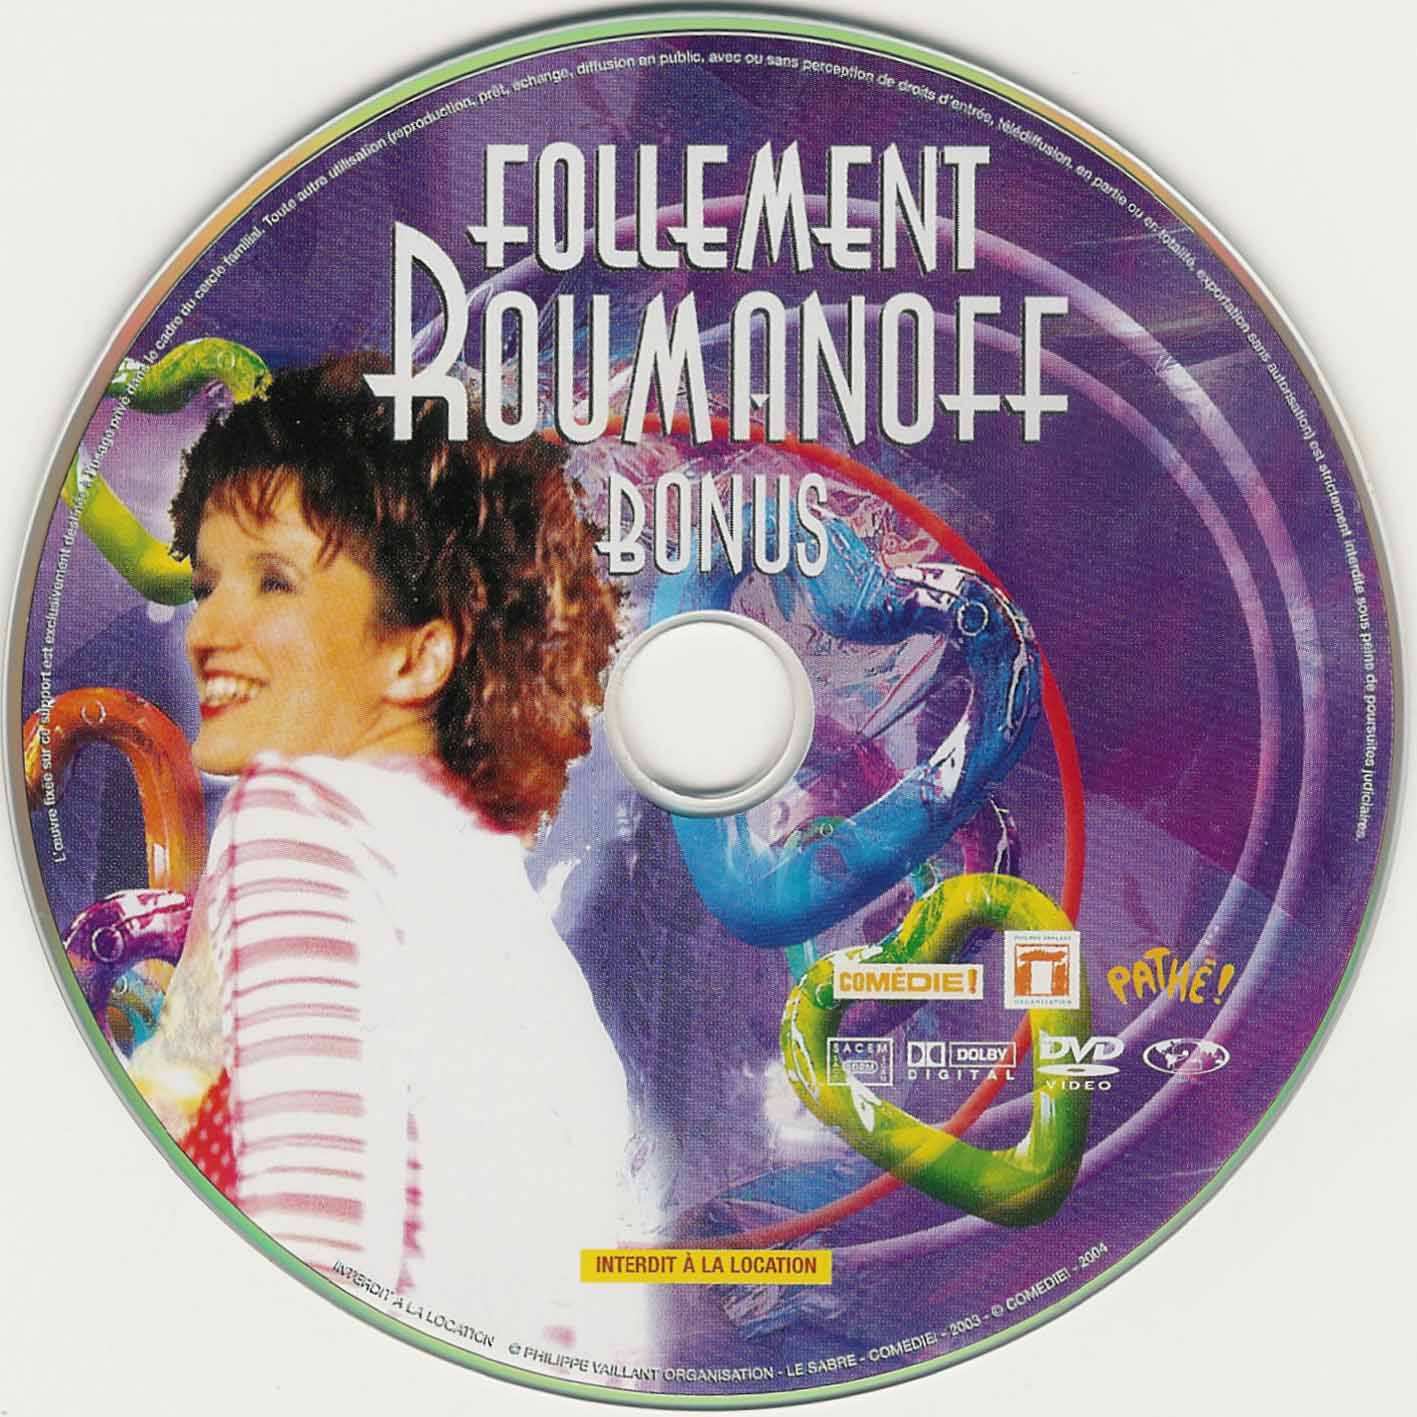 Follement Roumanoff (bonus)